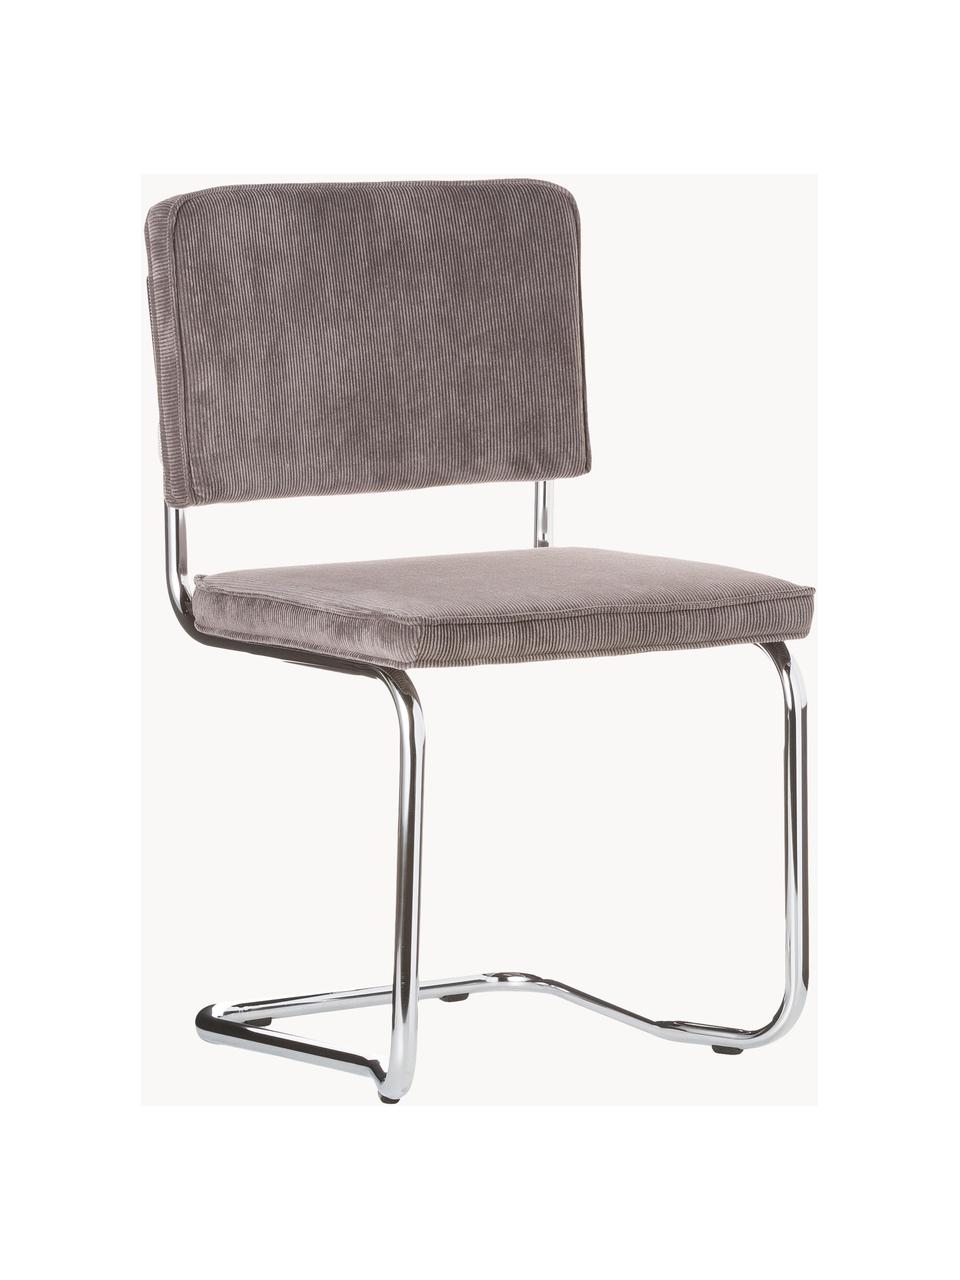 Manšestrová konzolová židle Kink, Taupe, lesklá stříbrná, Š 48 cm, H 48 cm